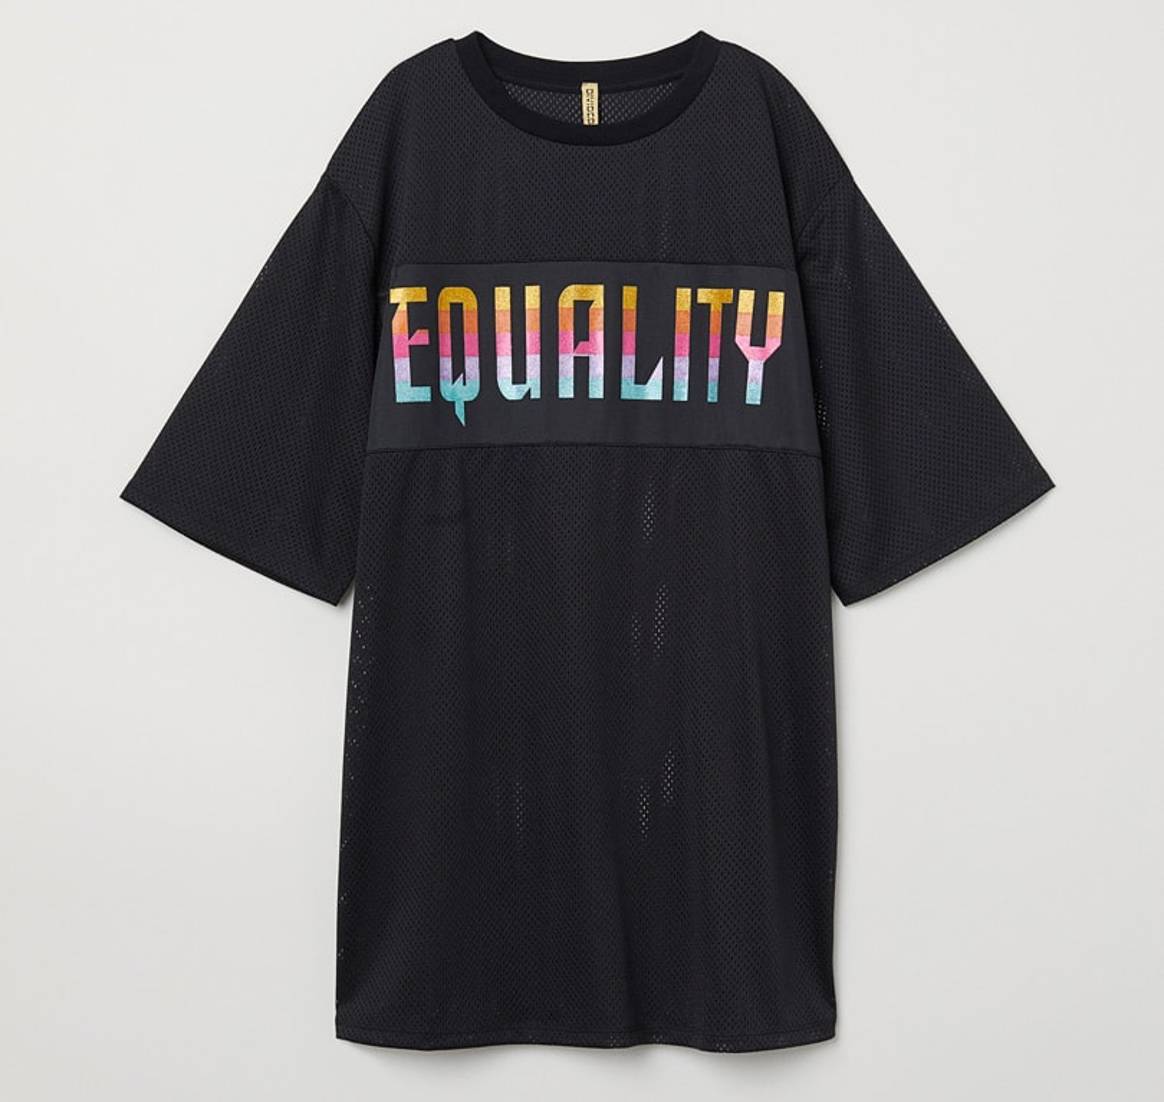 H&M soutient la communauté LGBT avec sa collection “Love for All”